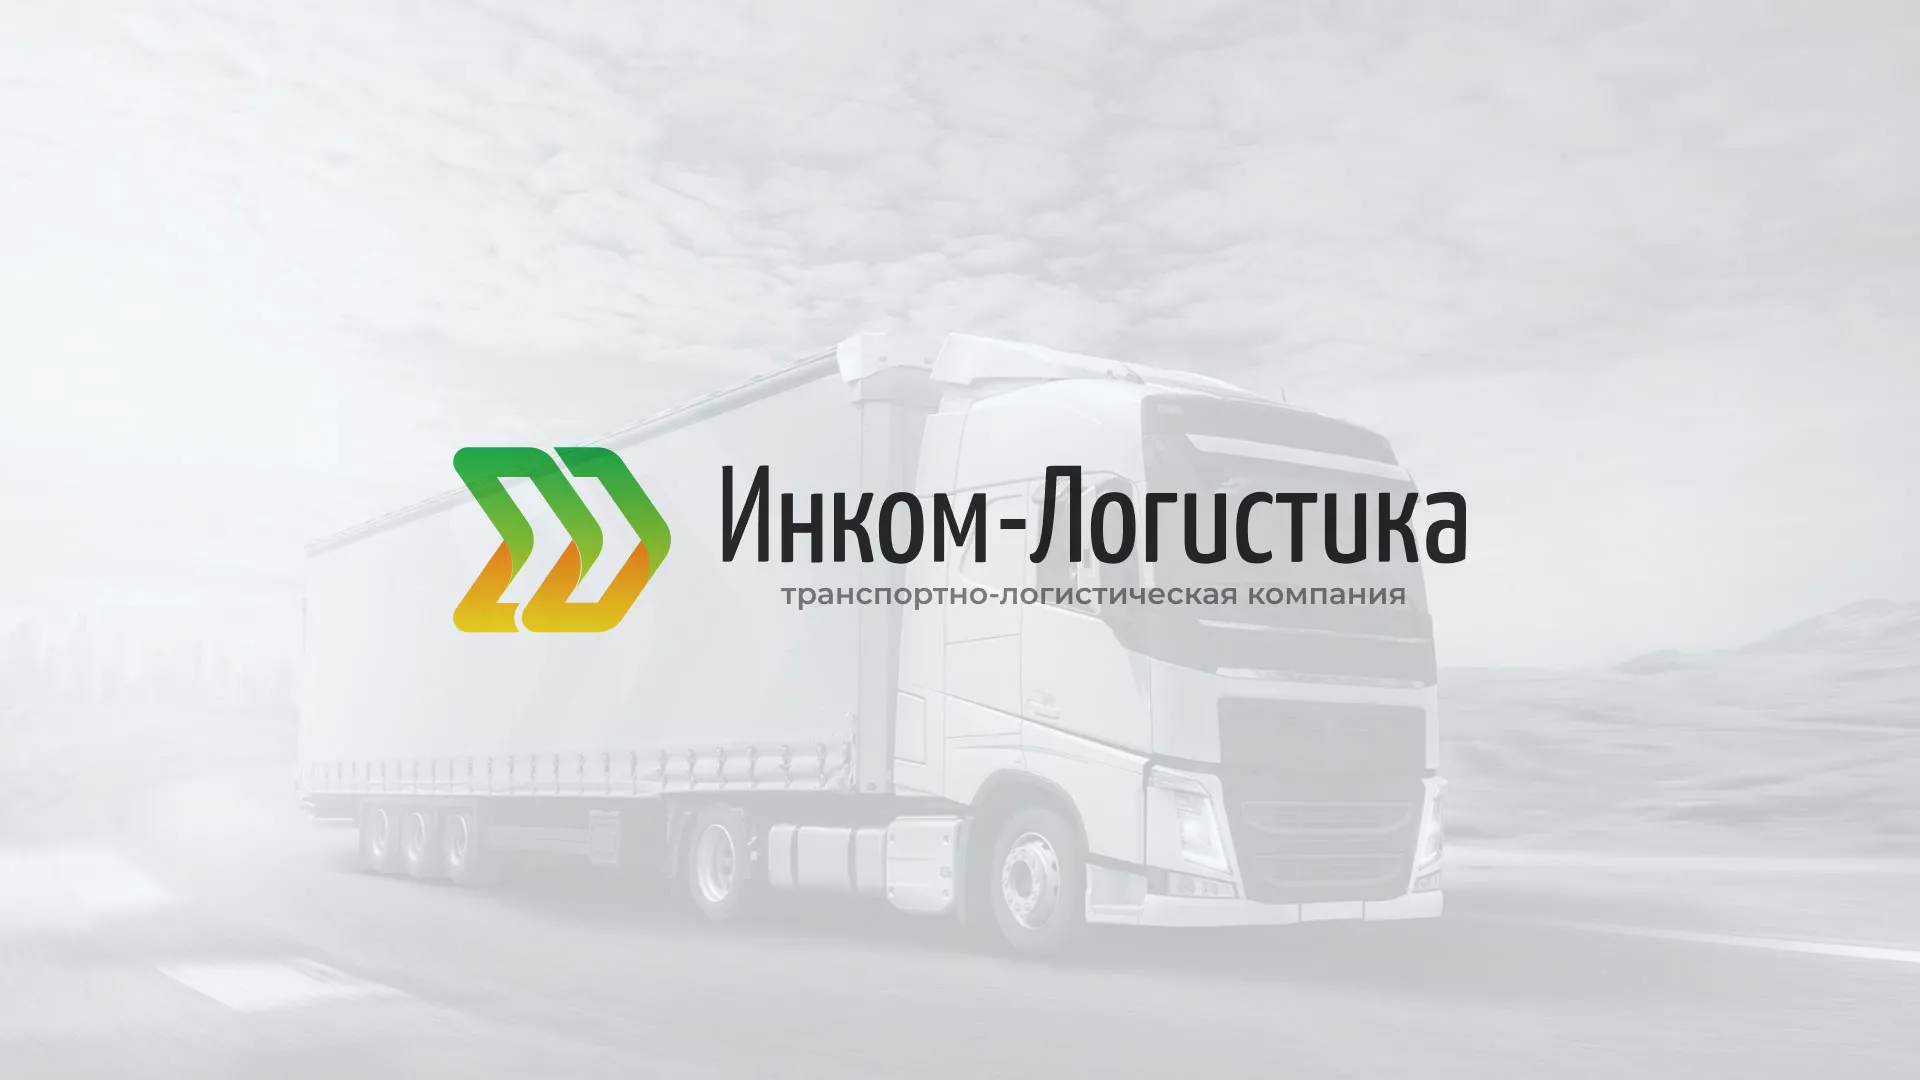 Разработка логотипа и сайта компании «Инком-Логистика» в Козельске